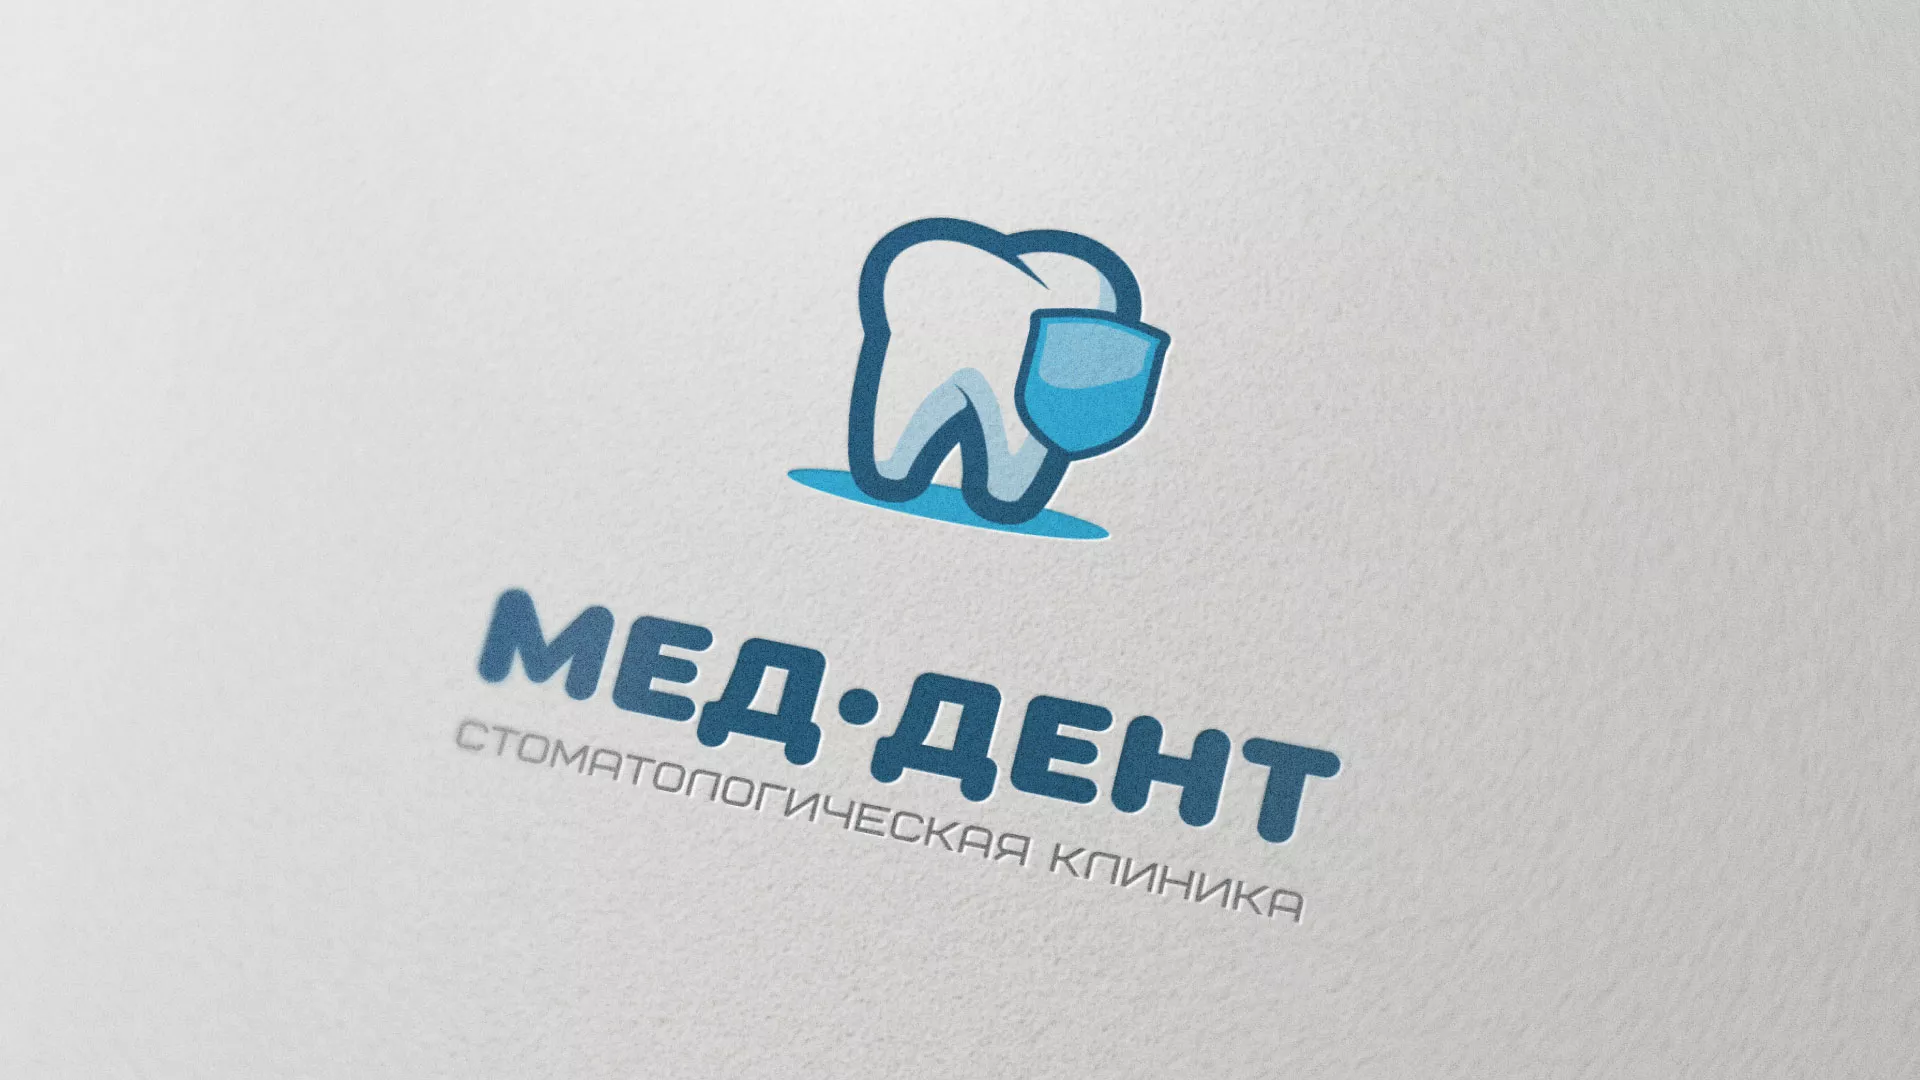 Разработка логотипа стоматологической клиники «МЕД-ДЕНТ» в Данилове